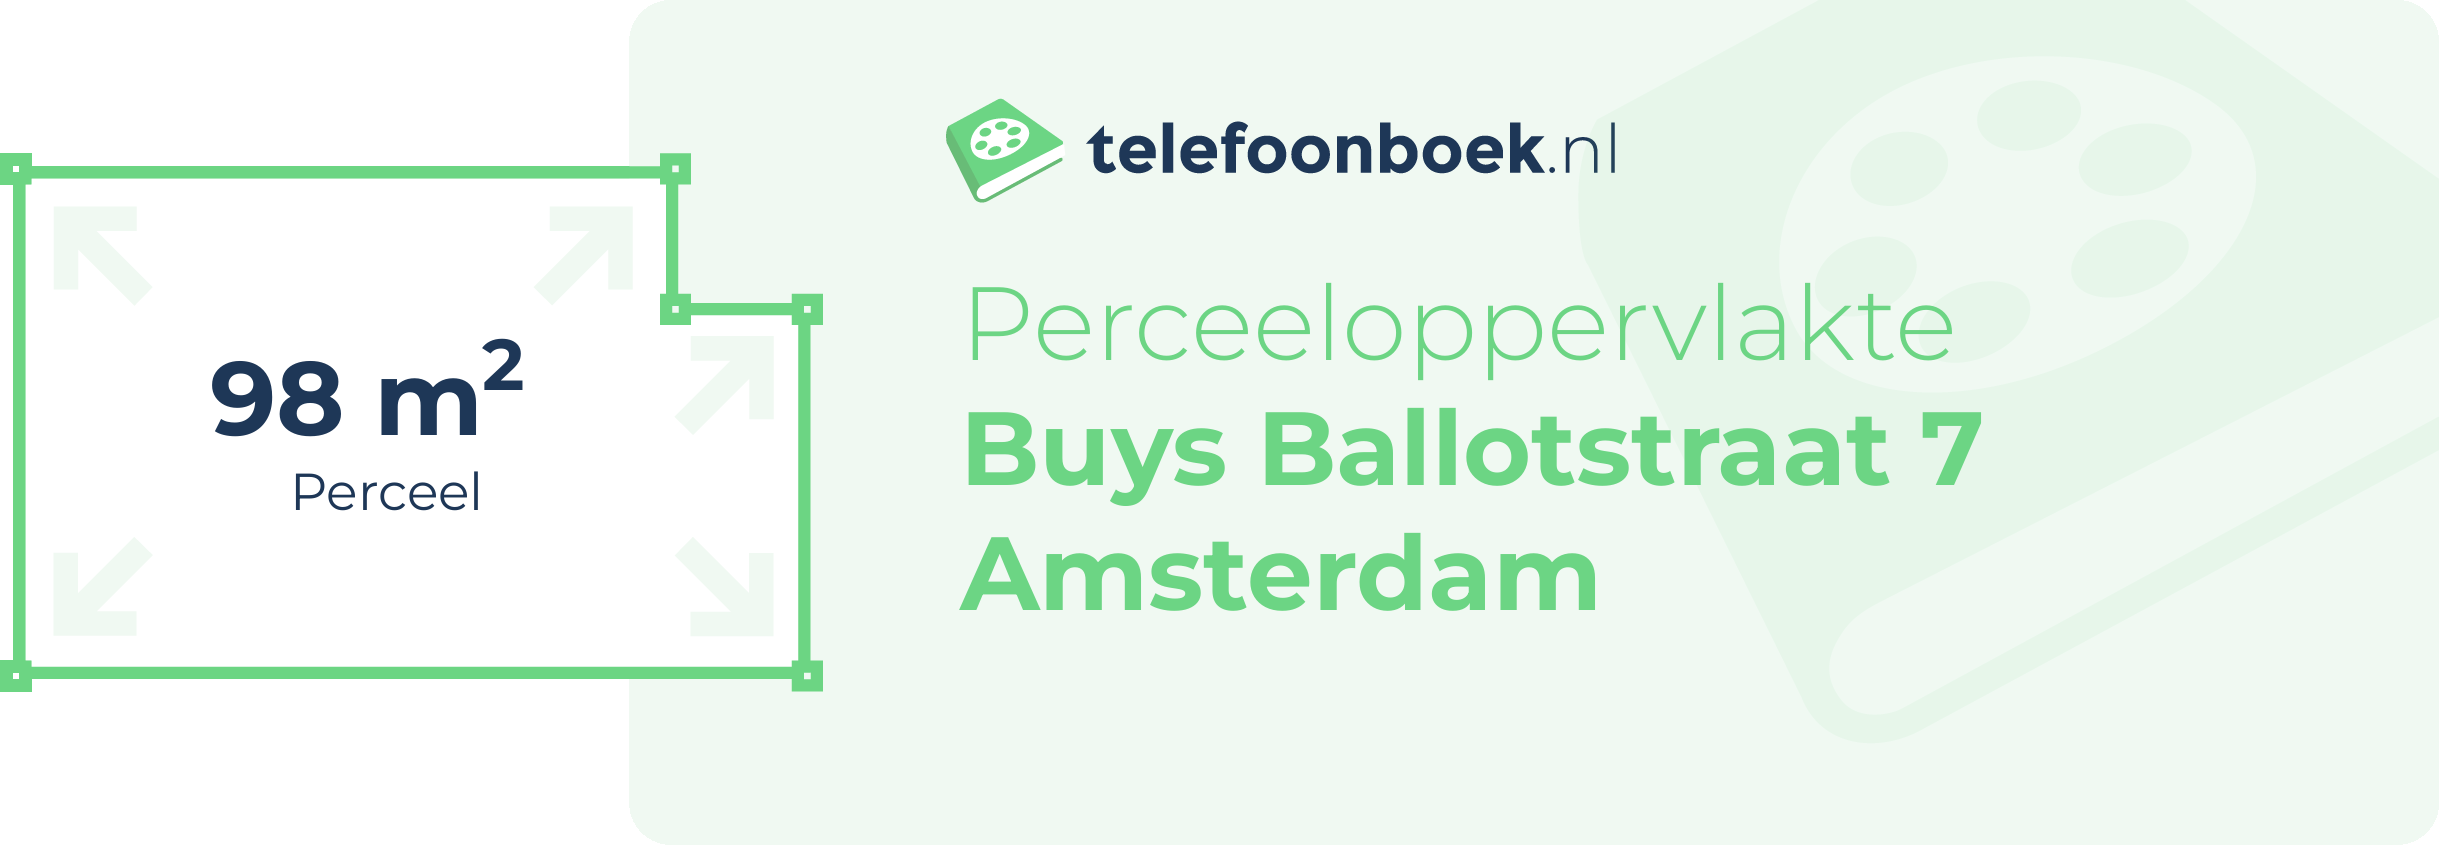 Perceeloppervlakte Buys Ballotstraat 7 Amsterdam